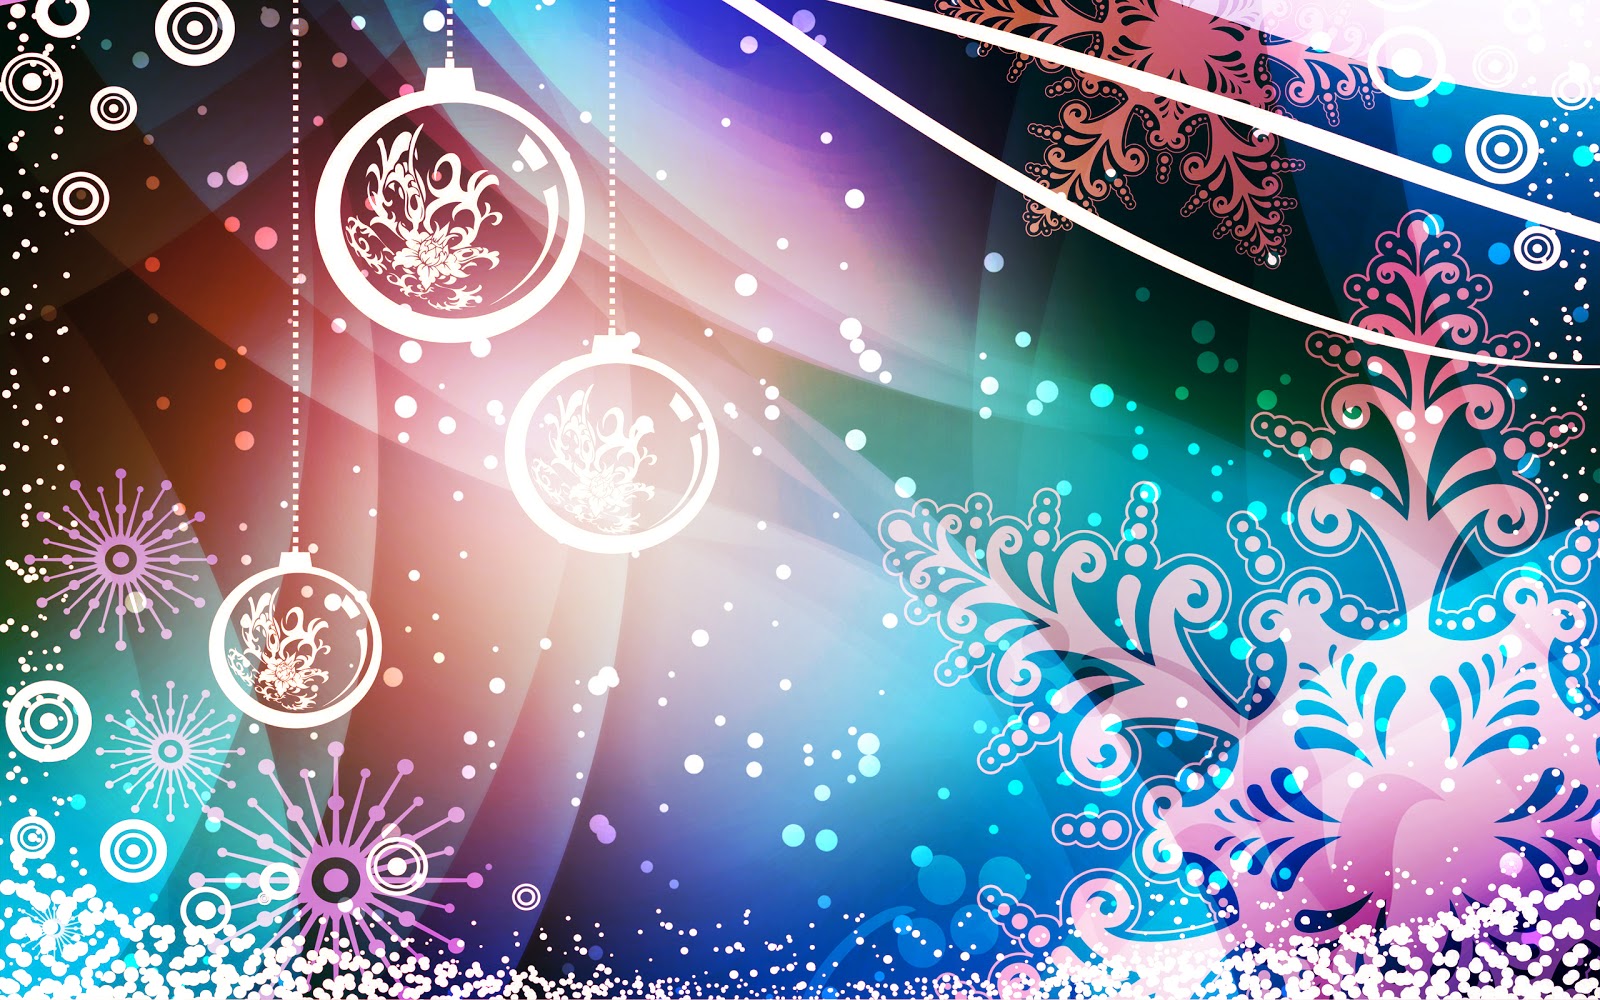 Merry Christmas 2013 WallpaperComputer Wallpaper 1600x1000